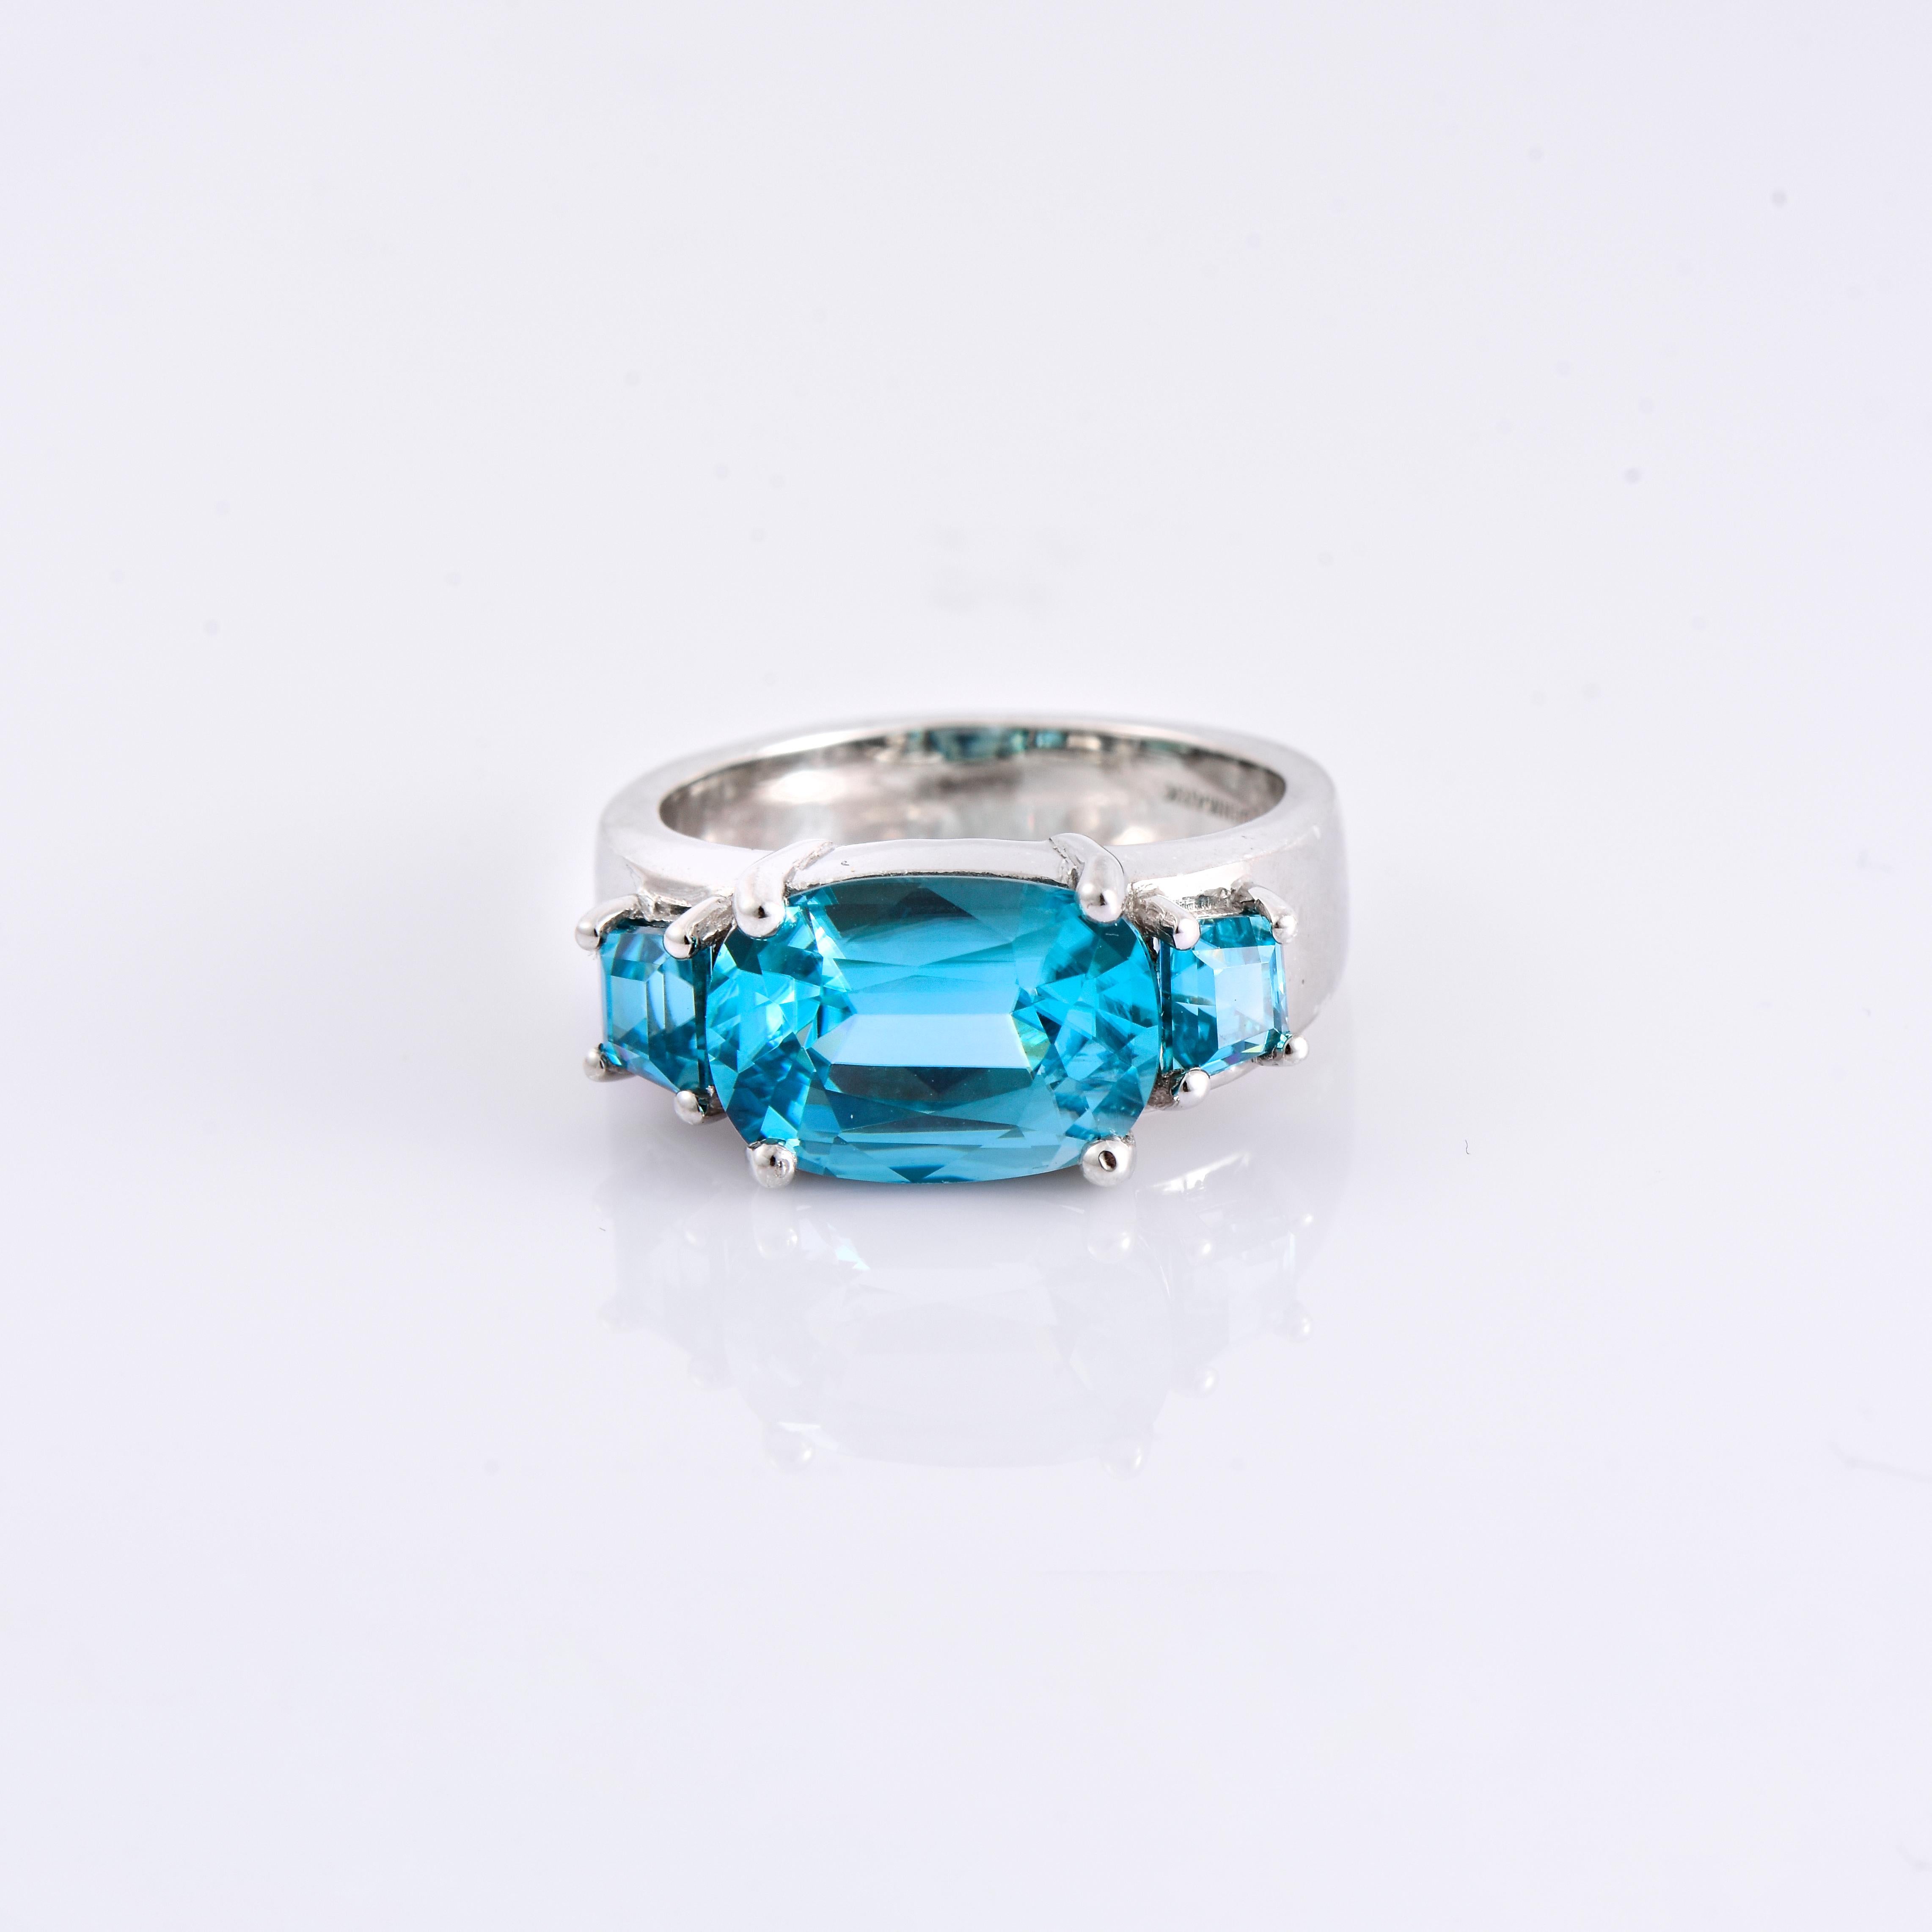 Orloff of Denmark; 925 Sterling Silber Ring mit drei natürlichen kambodschanischen blauen Zirkonen von insgesamt 8,27 Karat besetzt.

Dieses Stück wurde in sorgfältiger Handarbeit aus 925er Sterlingsilber gefertigt.
In der Mitte befindet sich ein